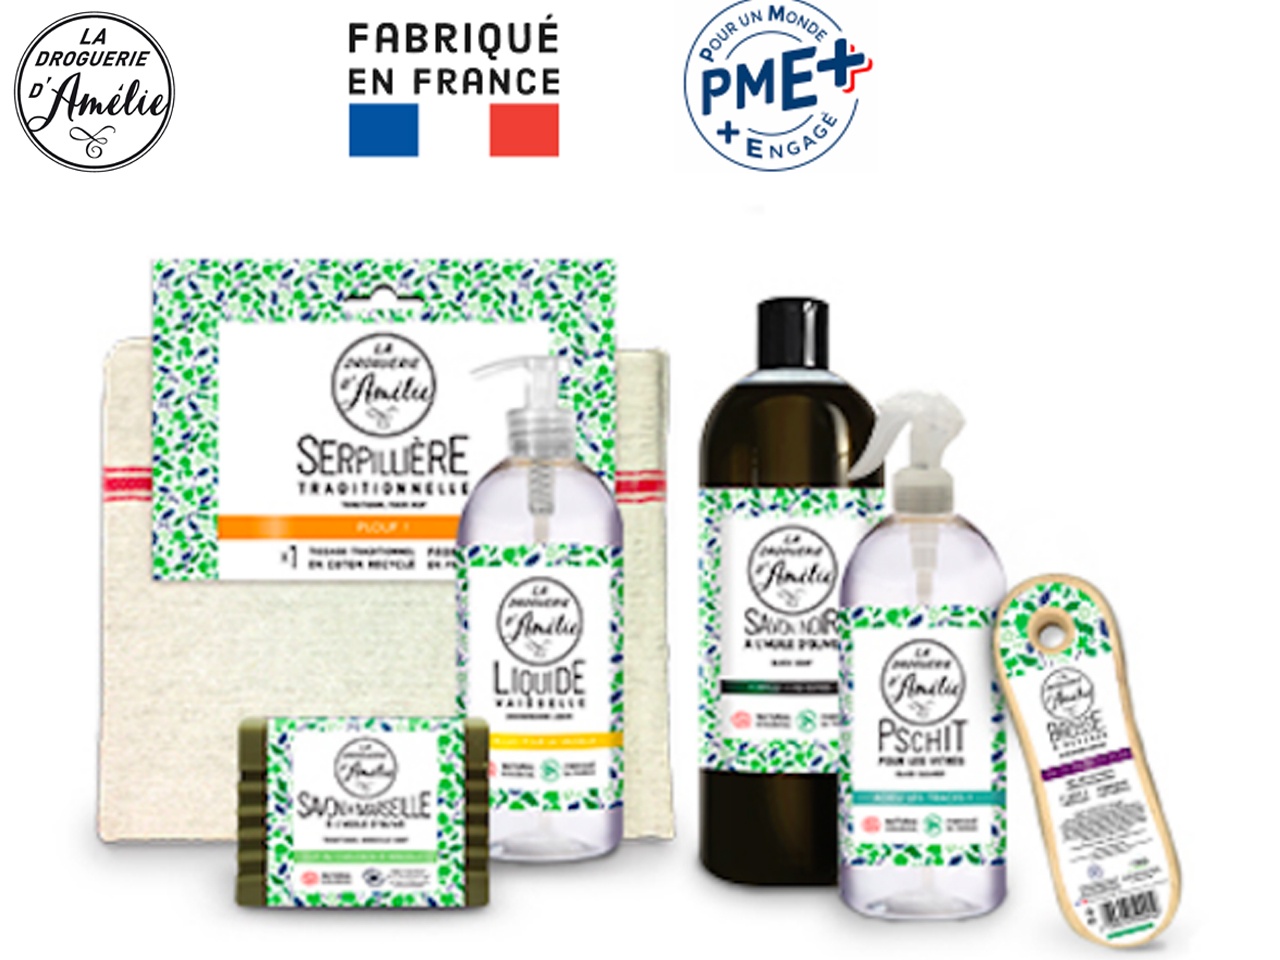 La droguerie d’Amélie, PME familiale française, lance une nouvelle gamme écologique de produits
            d’entretien de la maison